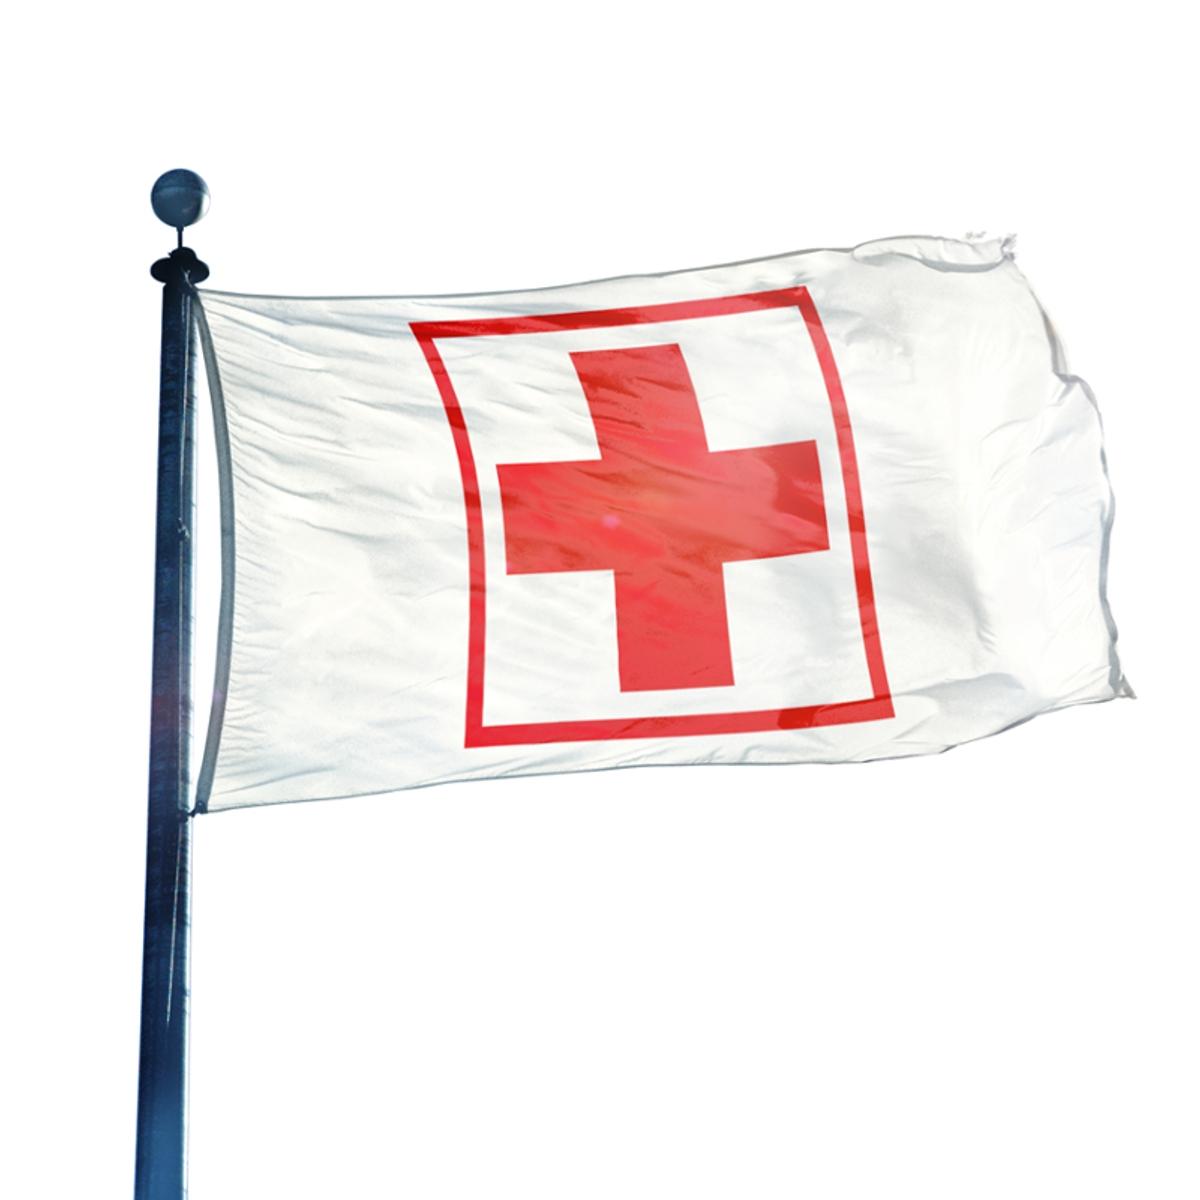 Erste Hilfe Hissflagge, Fahne im Wunschformat (1442)